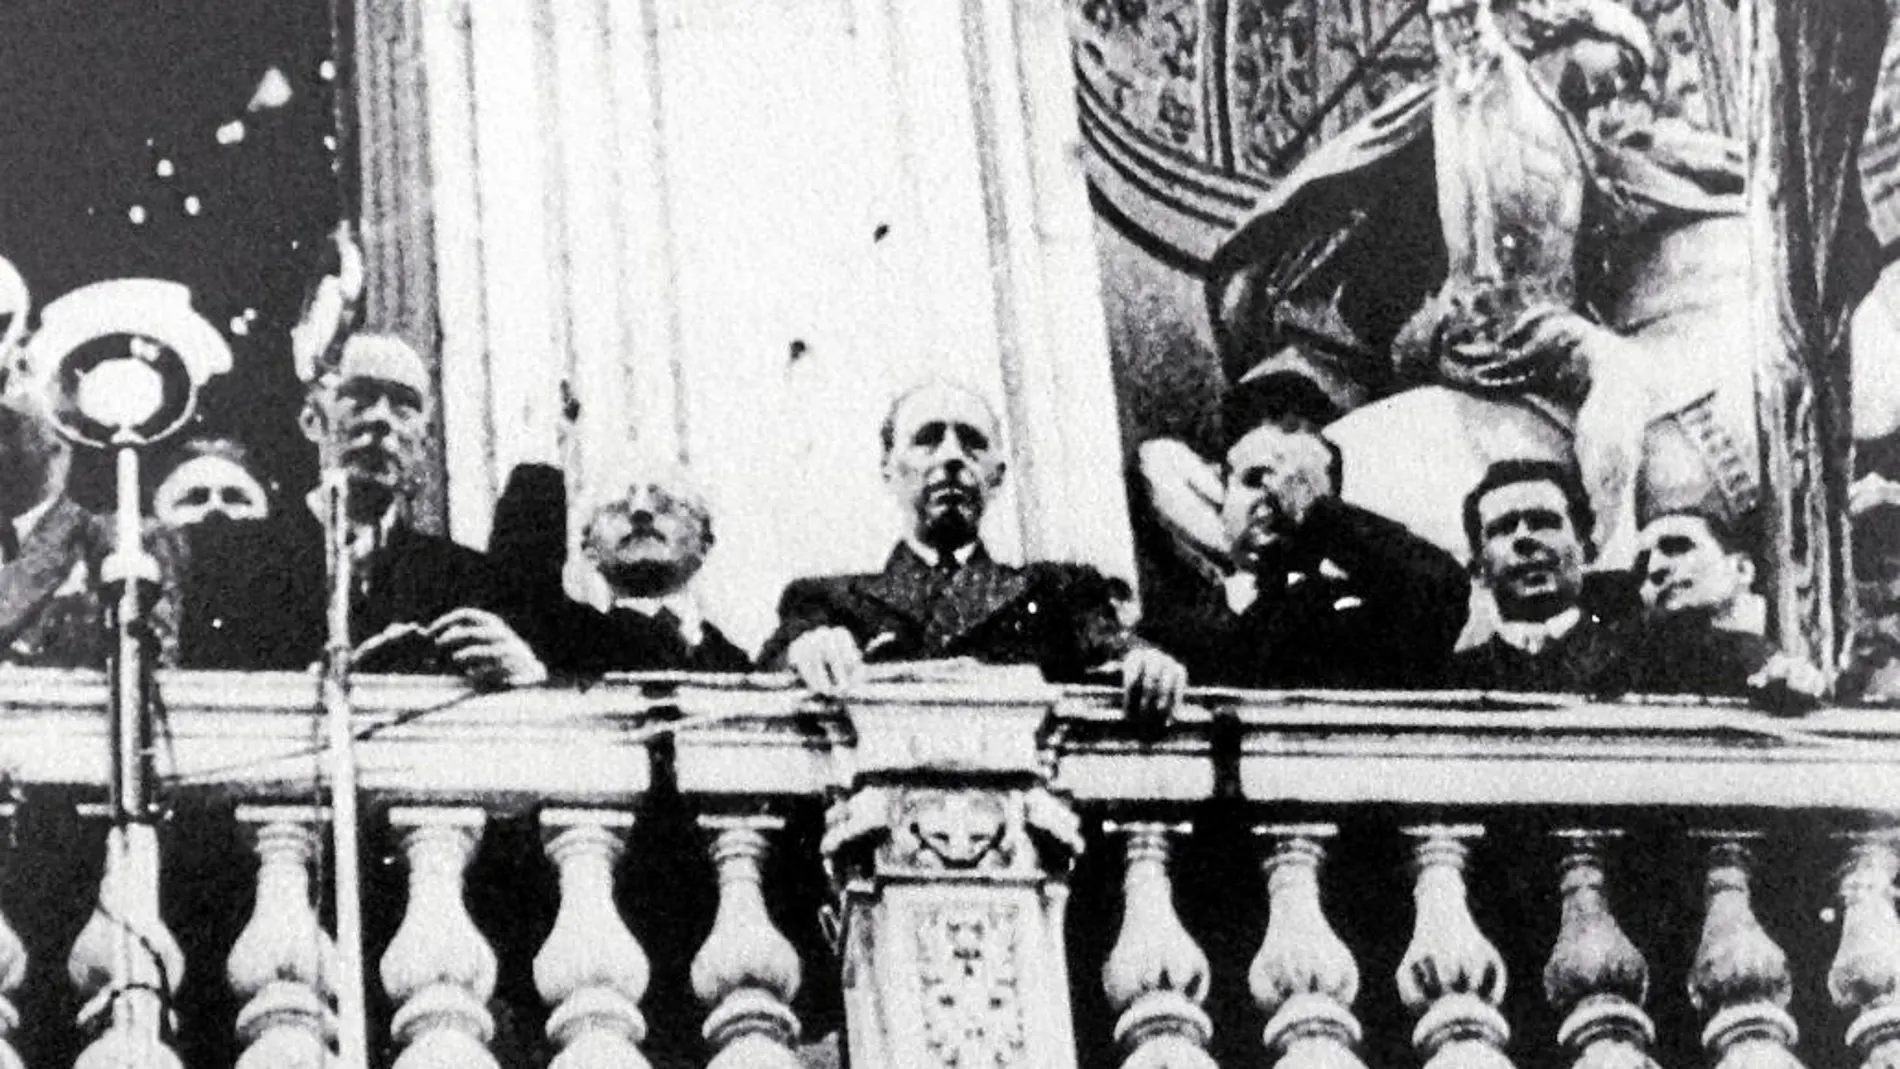 El presidente de Cataluña en 1934, Lluís Companys, desde el balcón de la Generalitat donde proclamó el Estado catalán